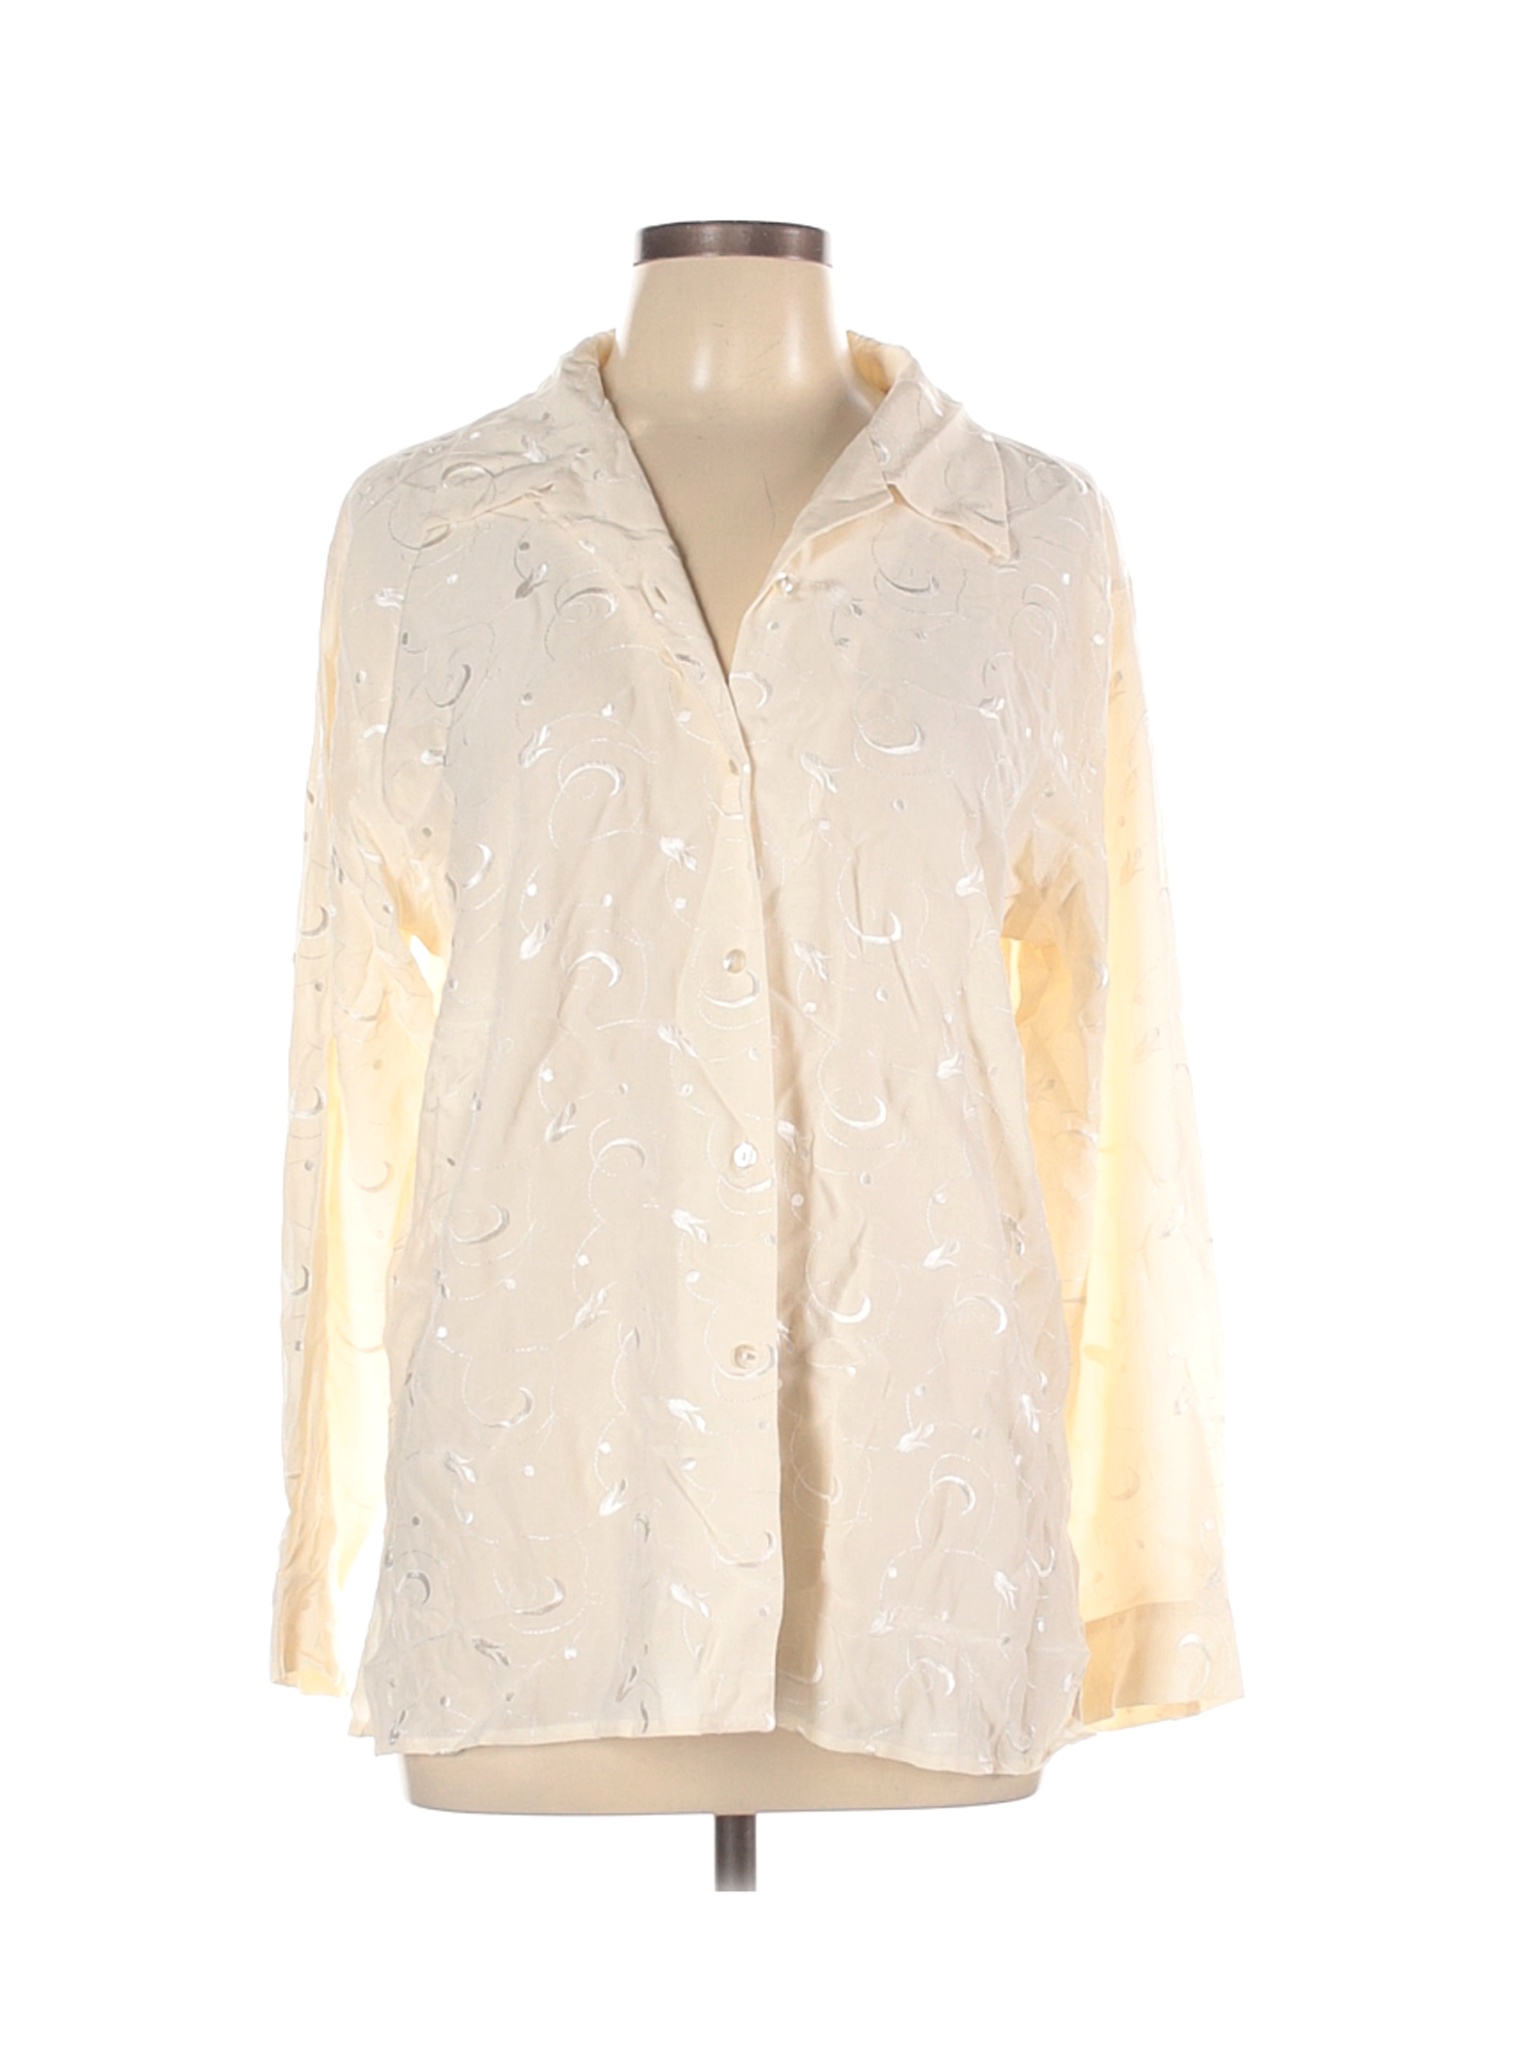 Orvis Women Ivory Long Sleeve Silk Top L | eBay